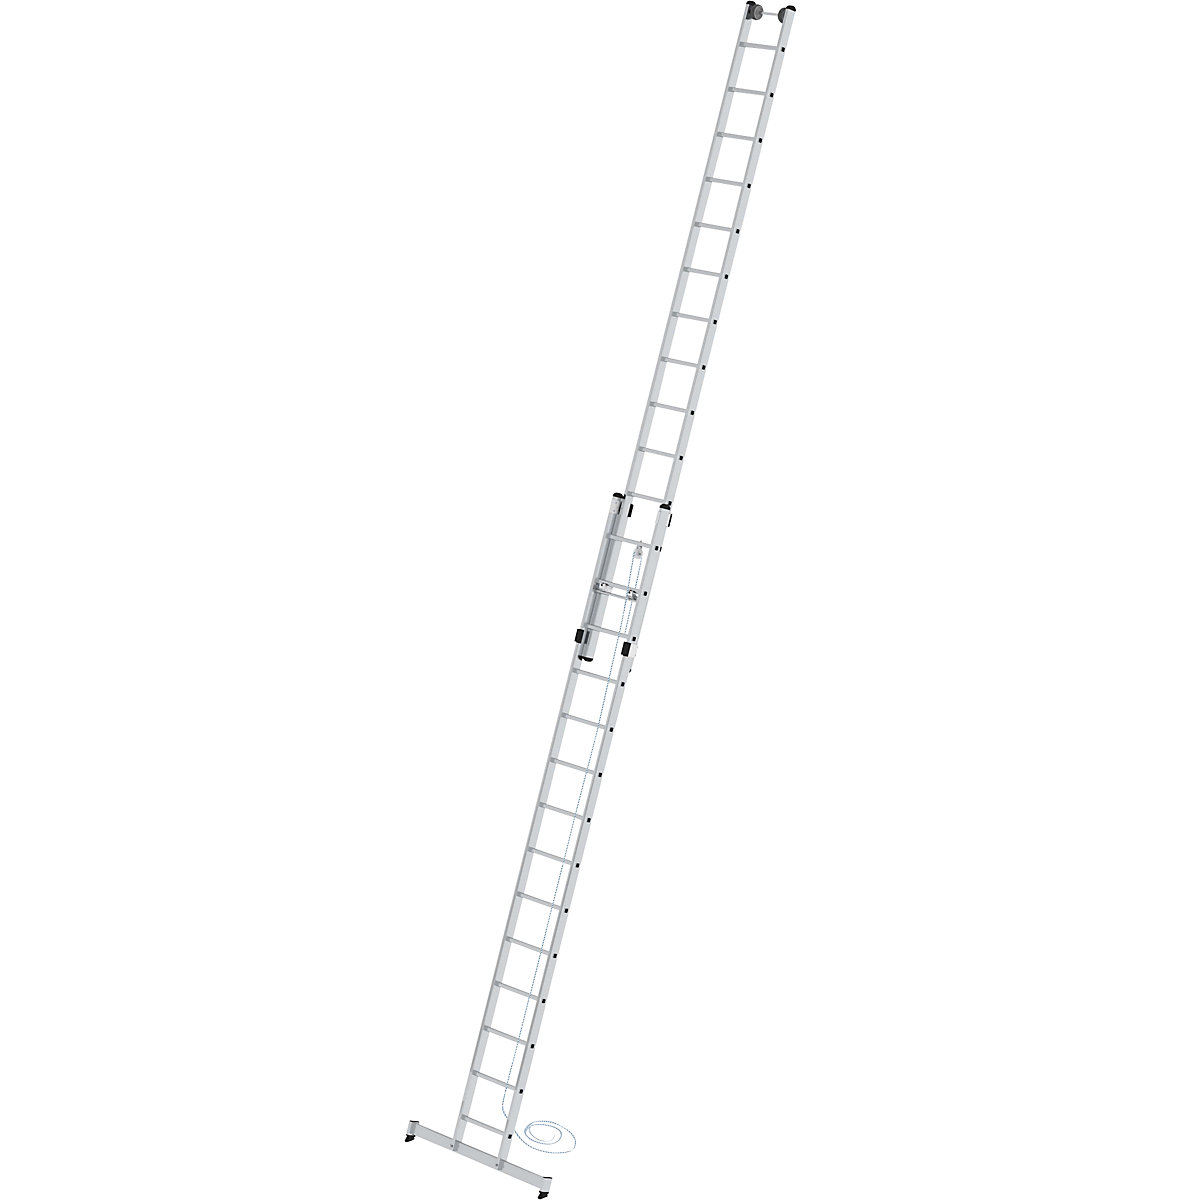 Výškově přestavitelný opěrný žebřík – MUNK, žebřík s lankem, 2dílný s příčníkem nivello®, 2 x 14 příčlí